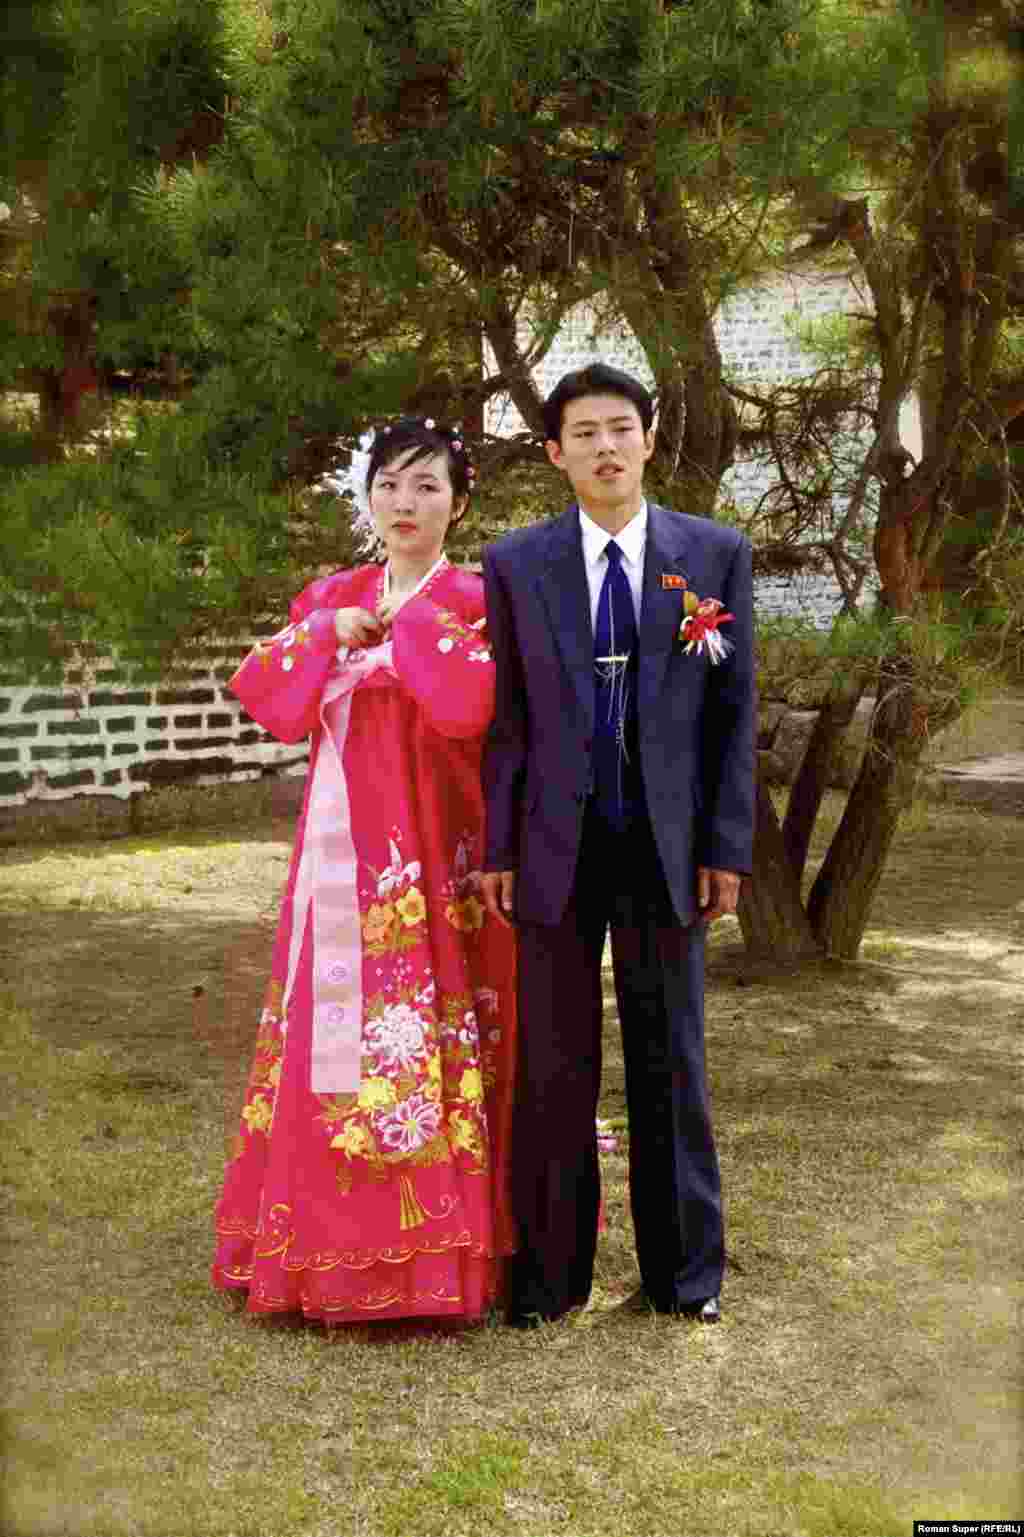 Северокорейские молодые. Секс в стране третьего Кима есть. Но, говорят, в основном только после свадьбы. Гомосексуальность подавляется и жестоко преследуется законом